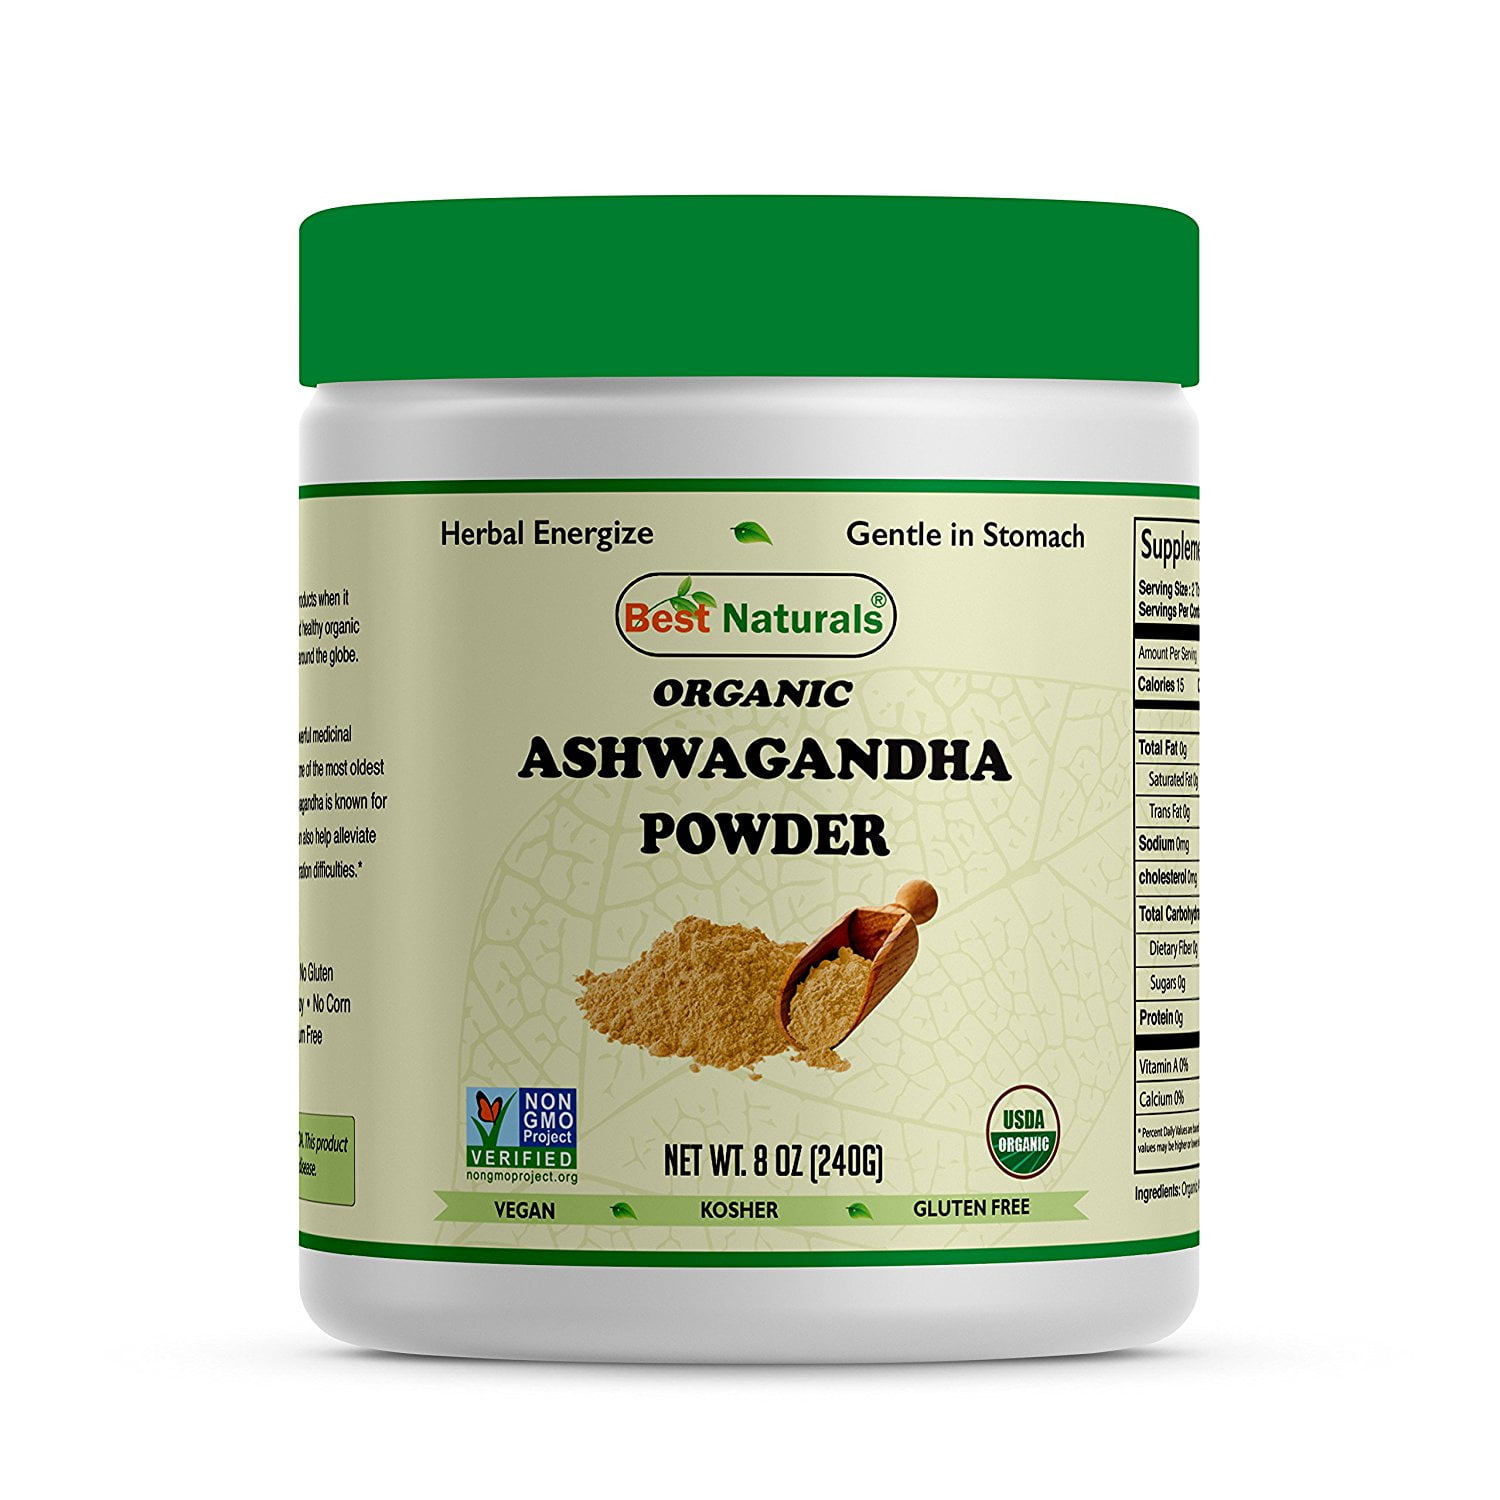 where to find ashwagandha powder